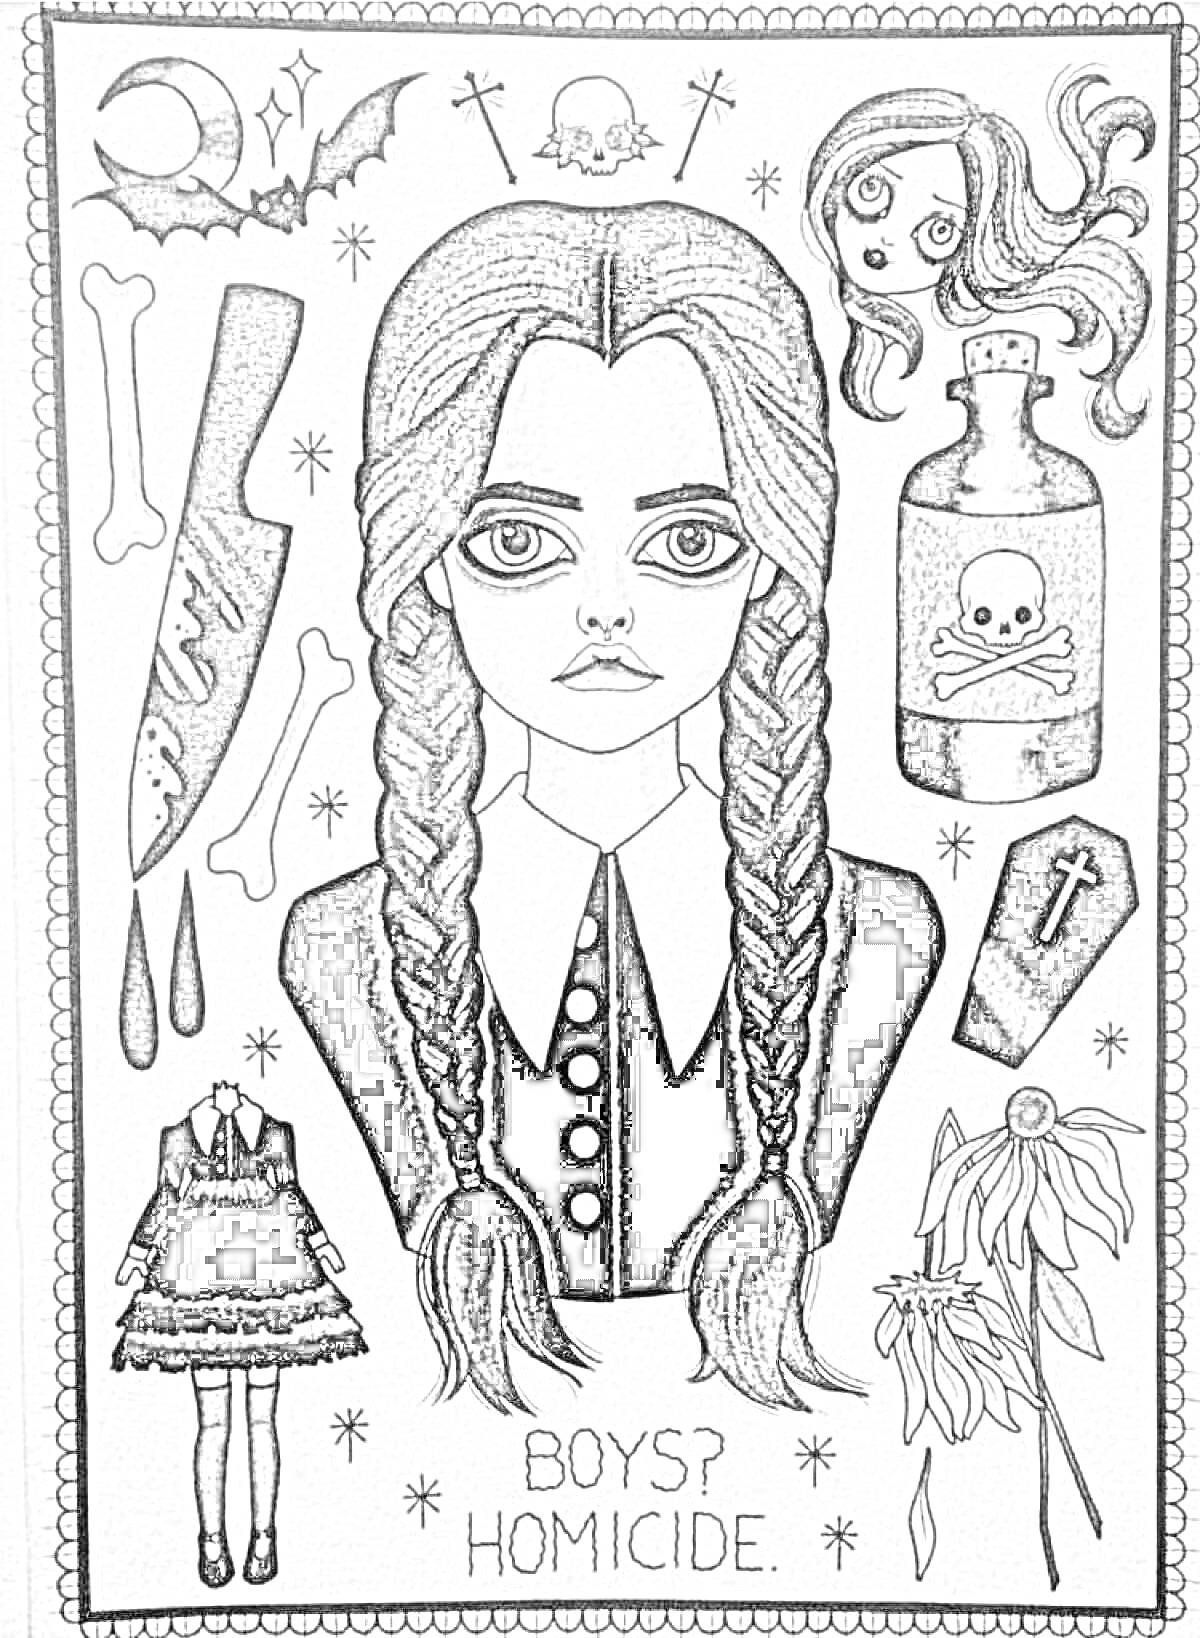 Венсдей Аддамс с элементами - Голова Венсдей с косичками, отрубленная голова куклы, бутылка с черепом, гроб, увядшие цветы, платье, нож, кость, надпись 